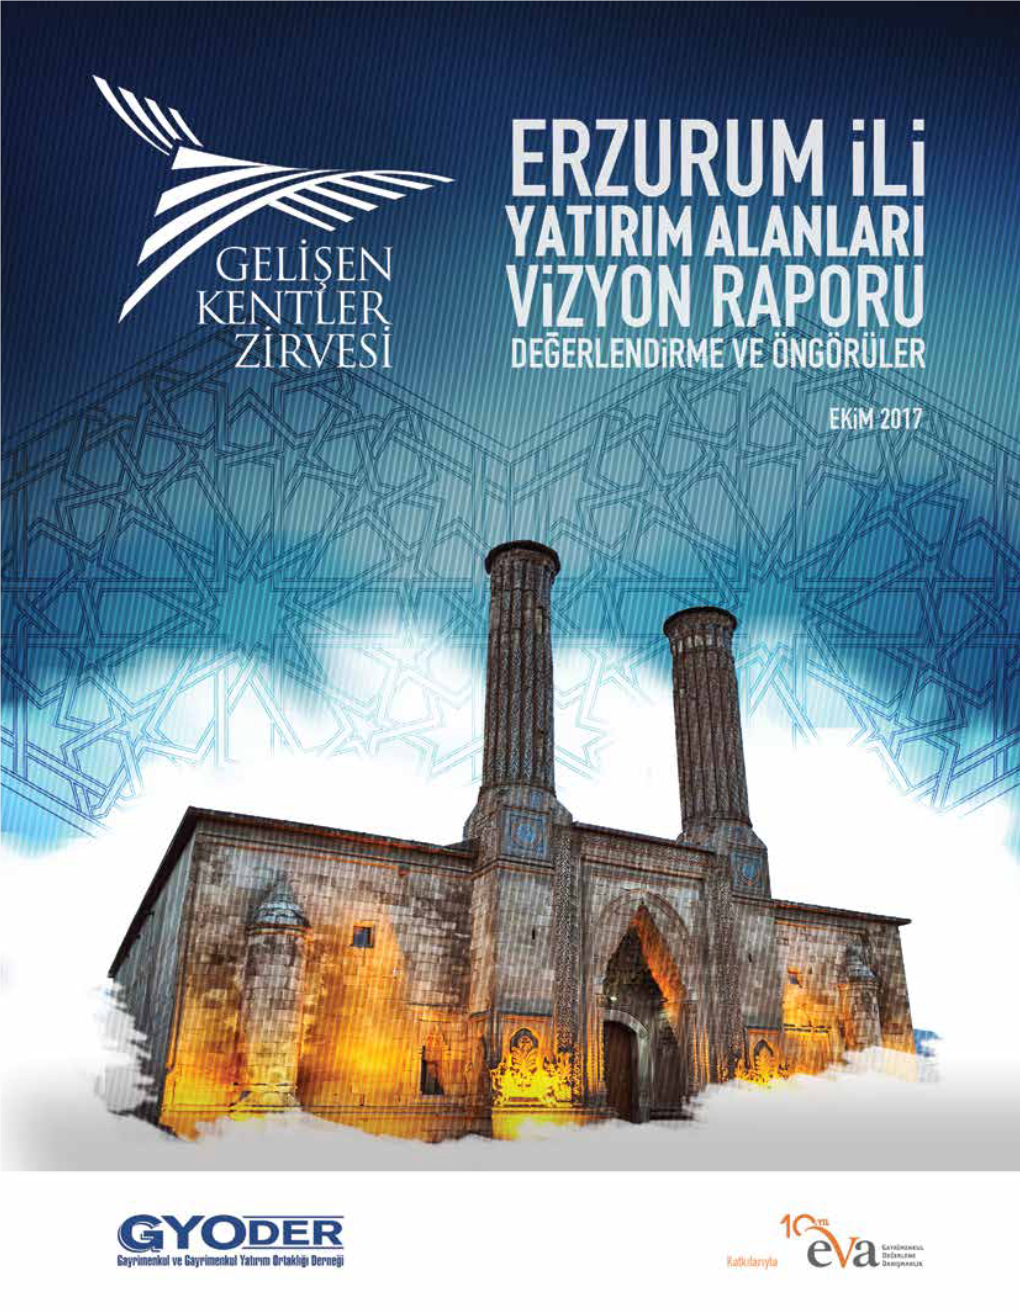 Erzurum İli Yatırım Alanları Vizyon Raporu Hazırlanmıştır